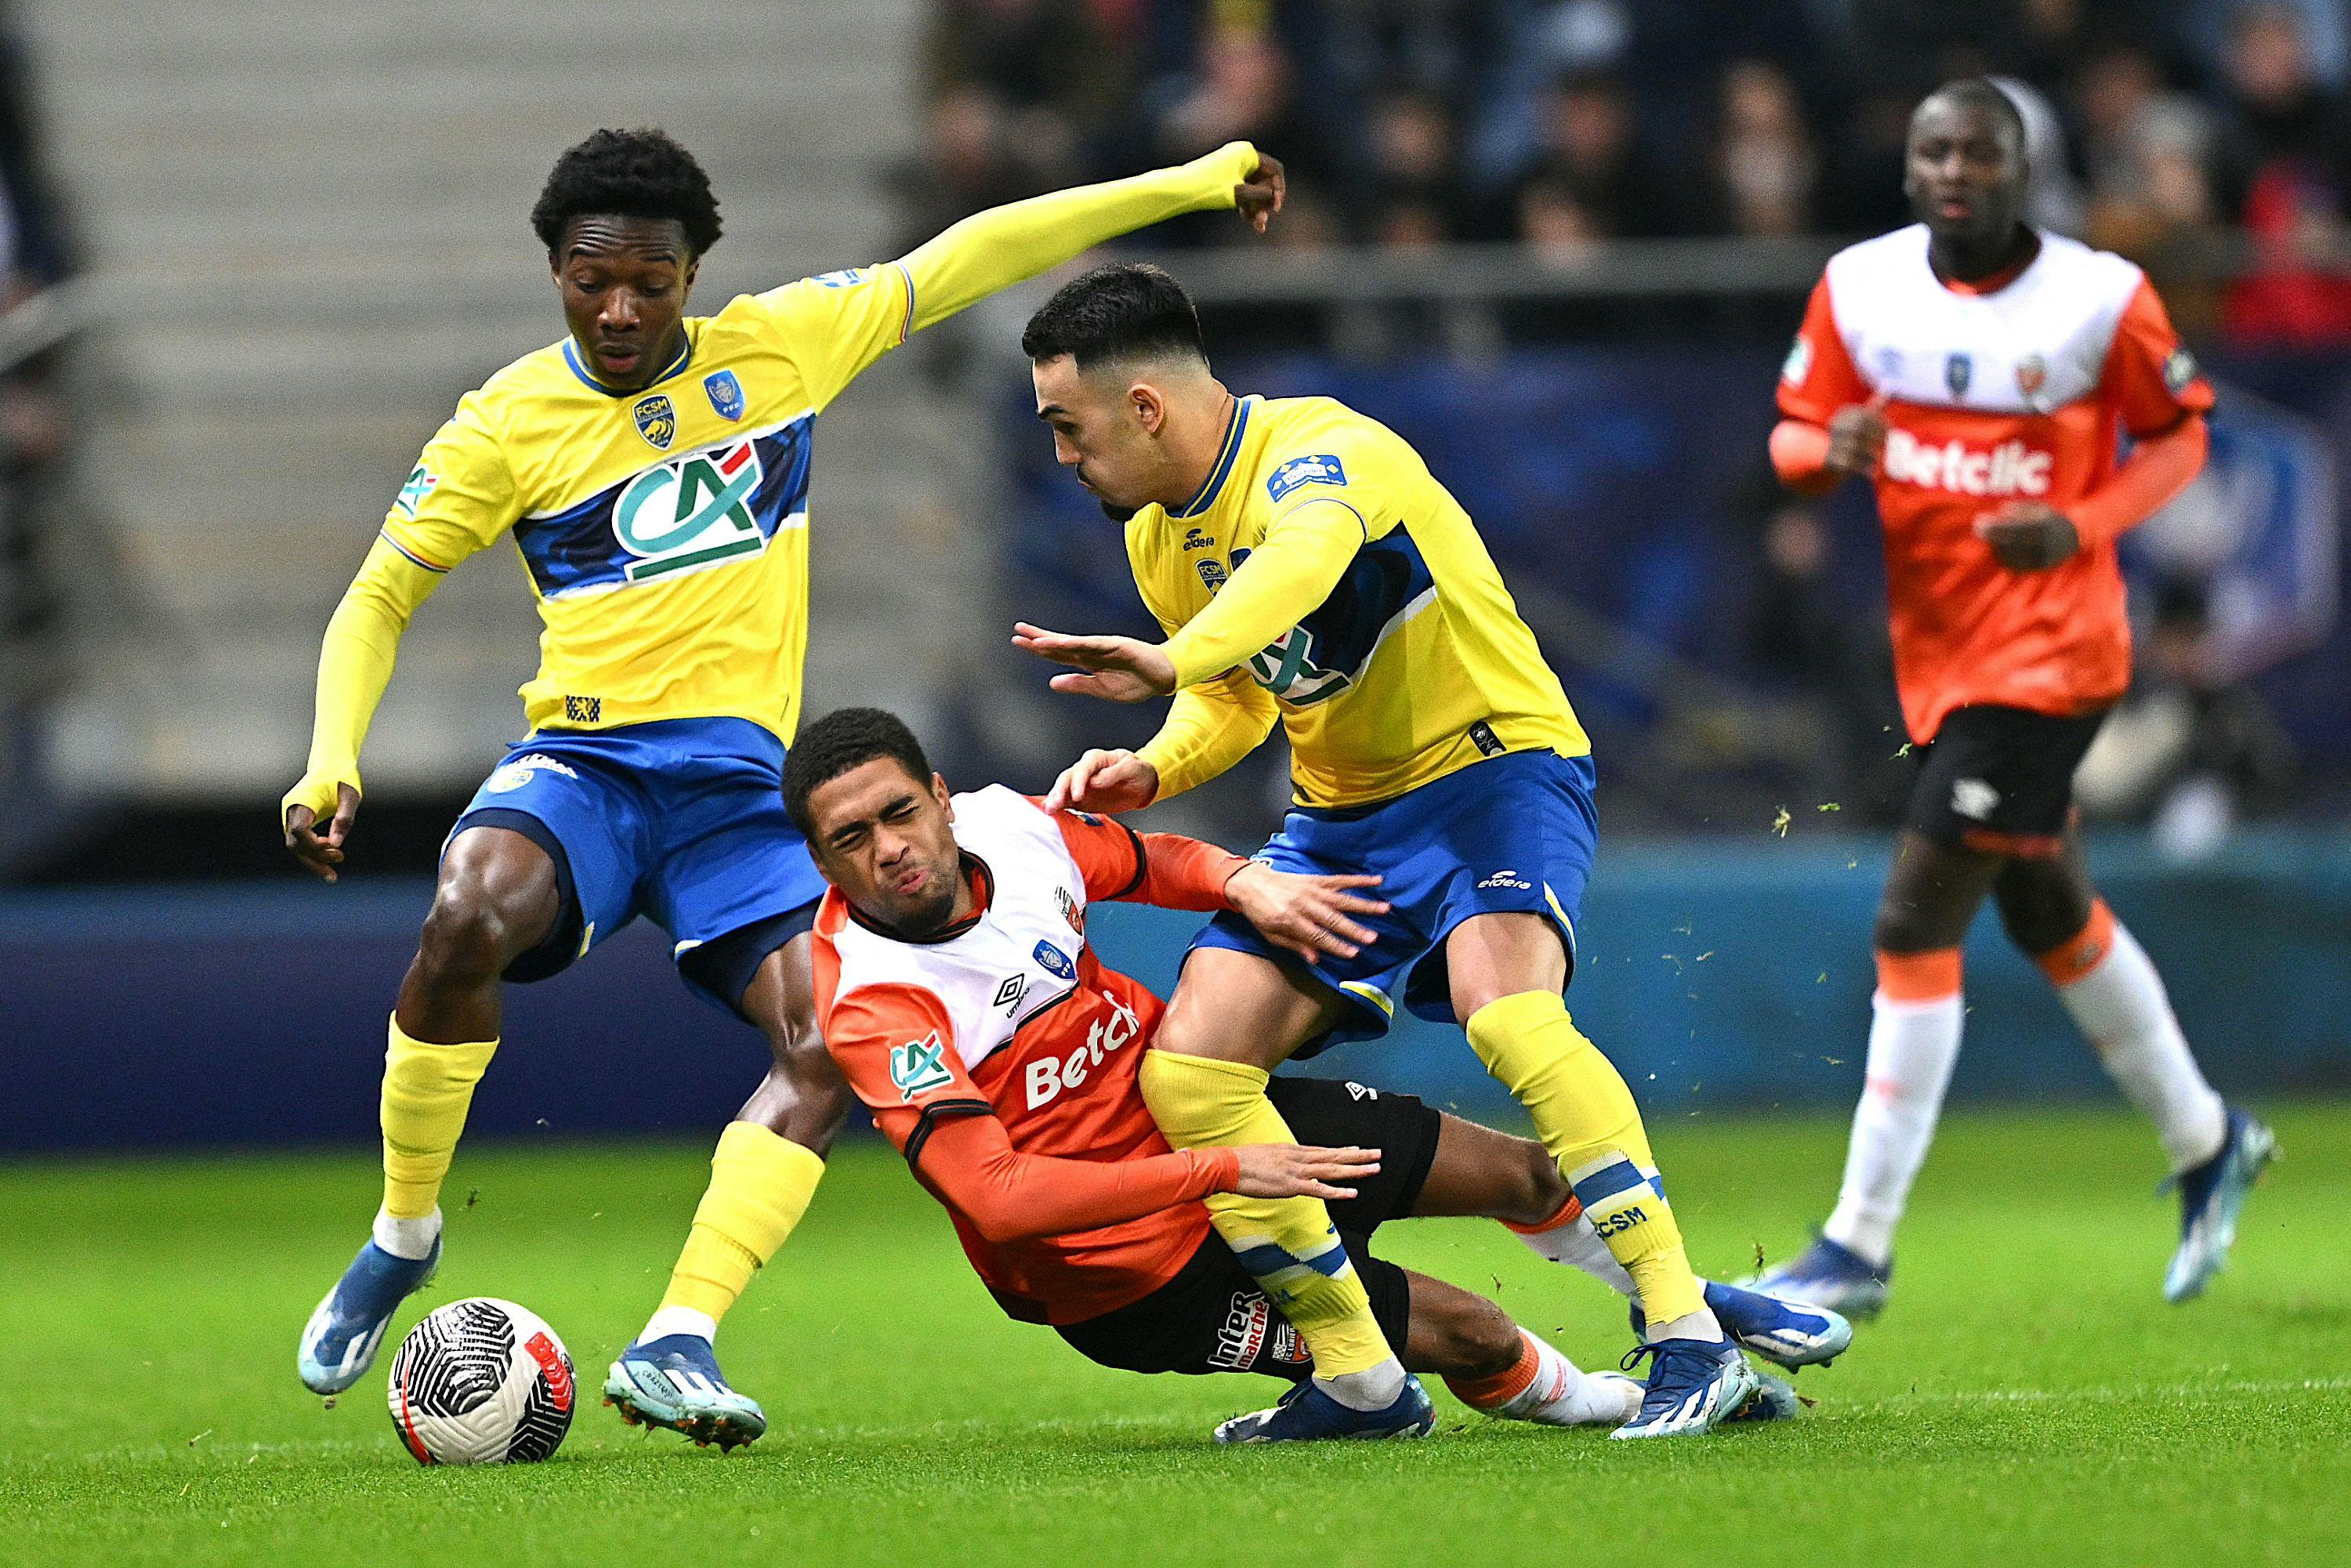 Coupe de France: Sochaux brings down Lorient